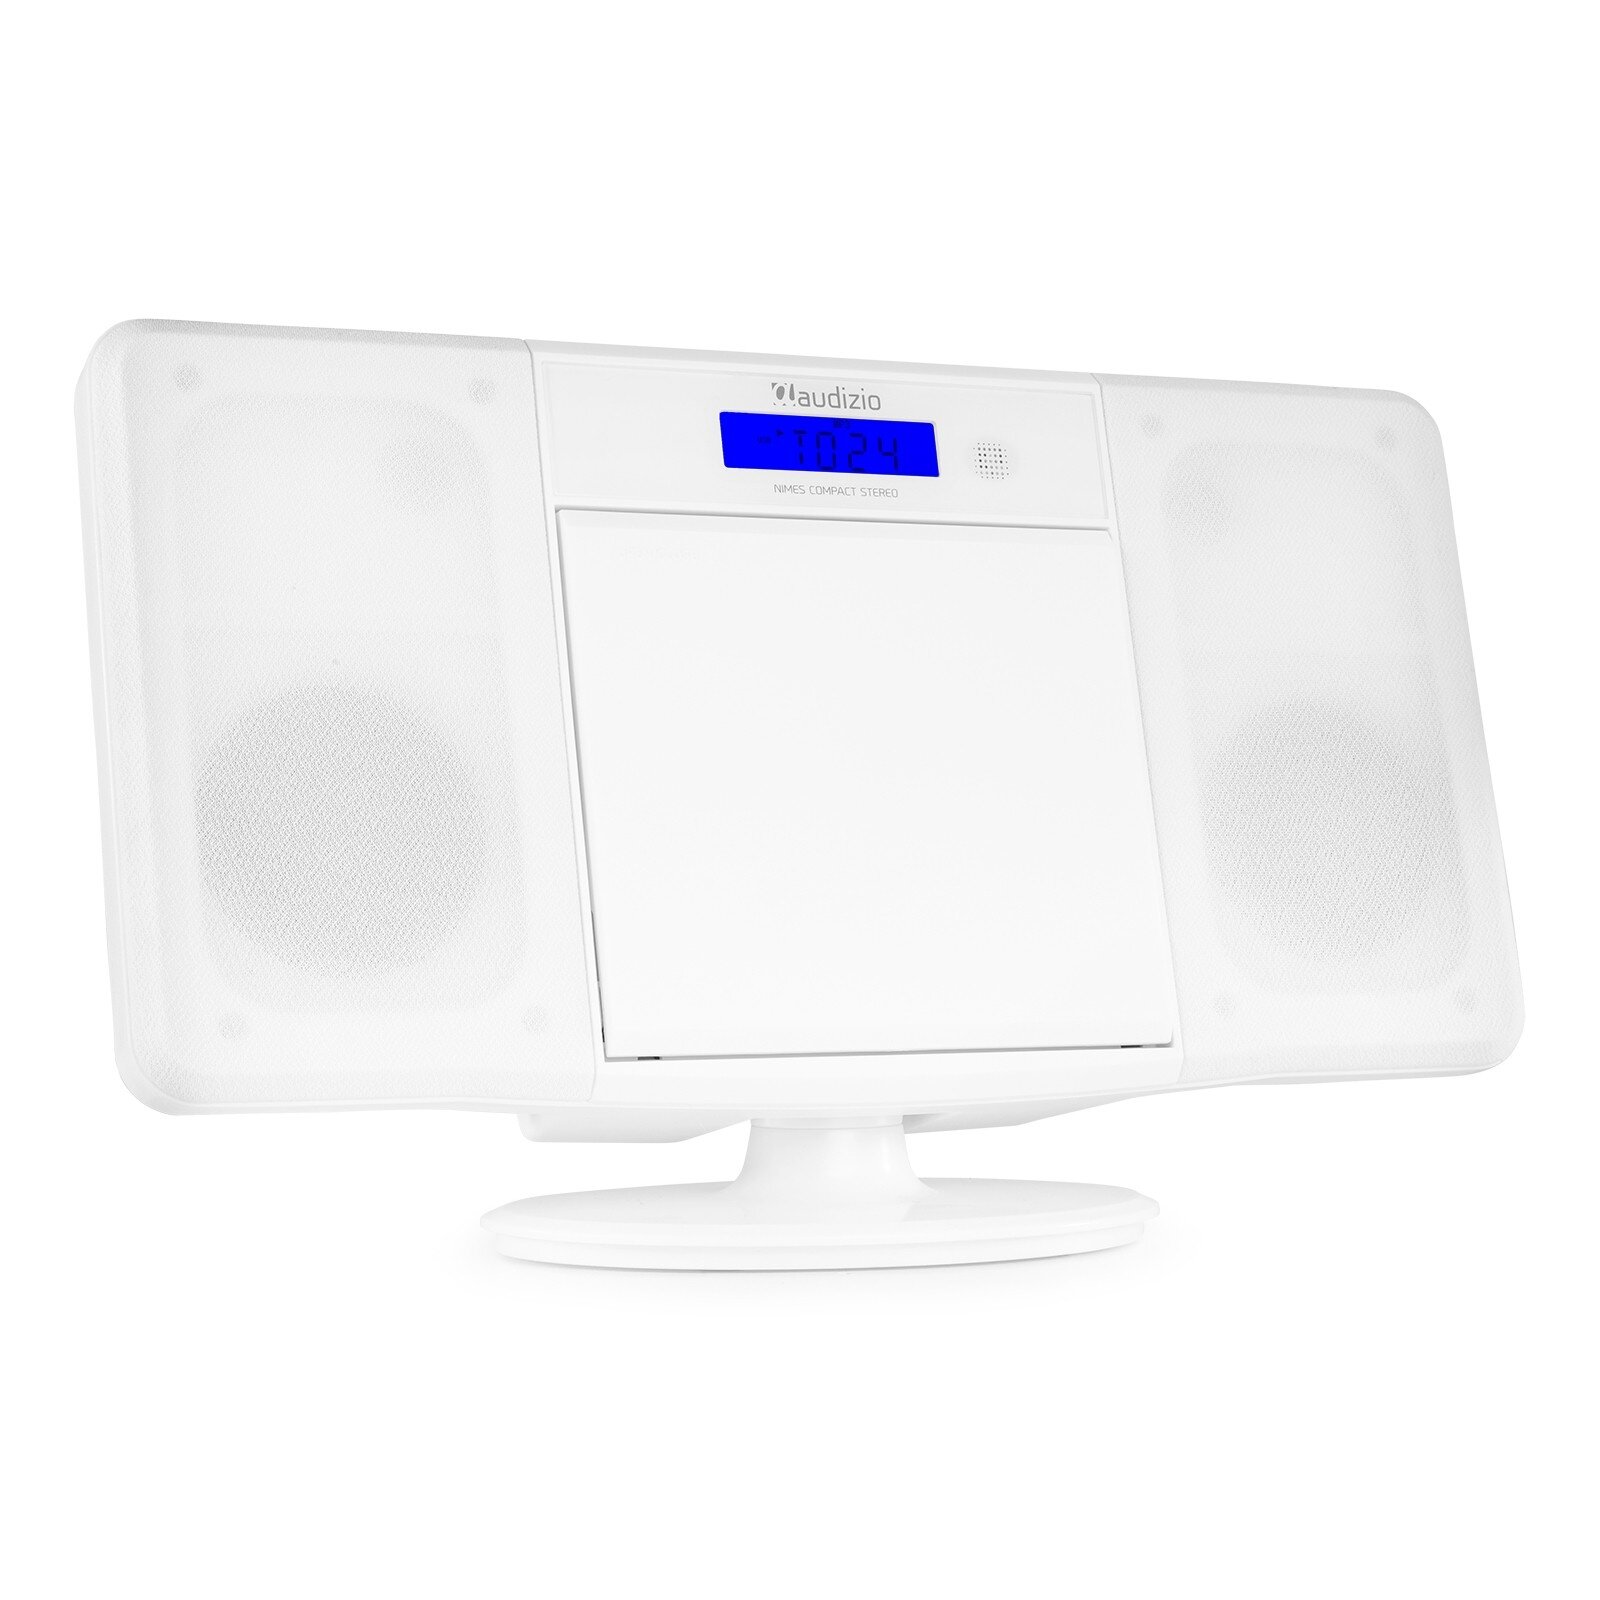 Audizio Nimes Bluetooth stereoset med CD-spelare, USB mp3-spelare och radio - 50W - Vit